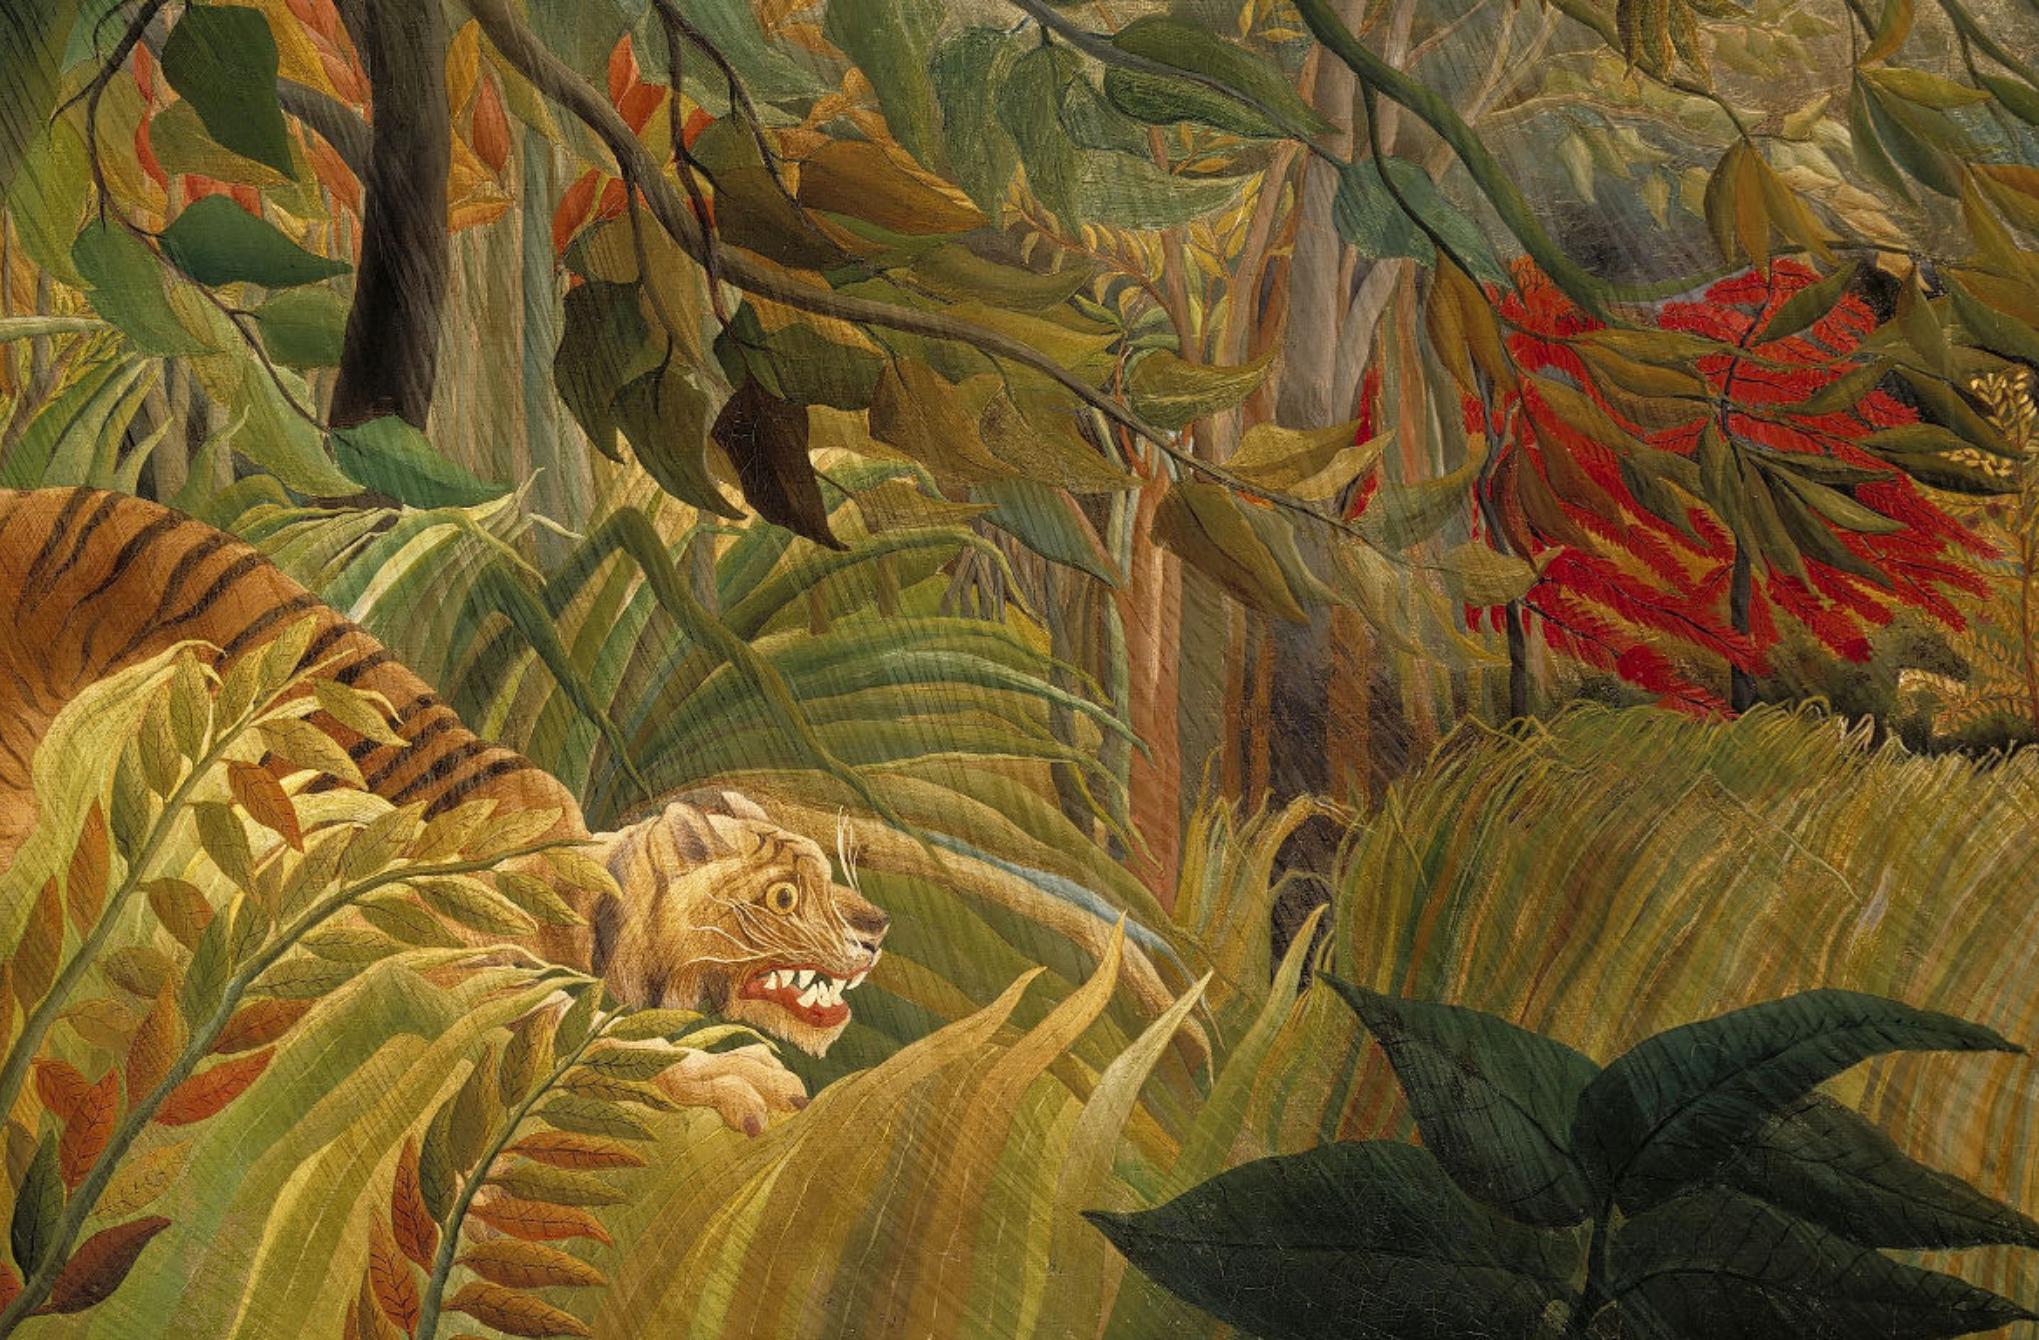 Το Ψυχολογικό τεστ της ζούγκλας: Το πρώτο πράγμα που δείτε στην εικόνα φανερώνει τους φόβους και τις ανησυχίες σου αυτή την περίοδο